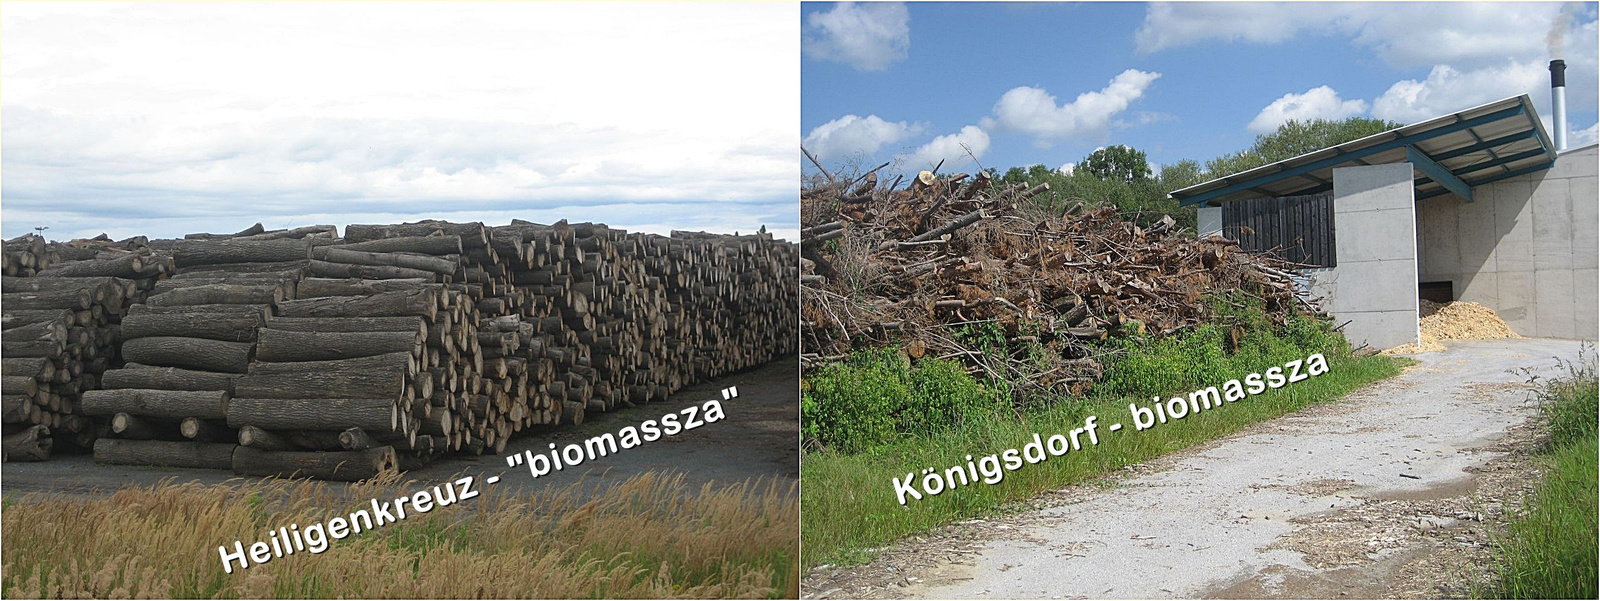 Biomassza a határon 1